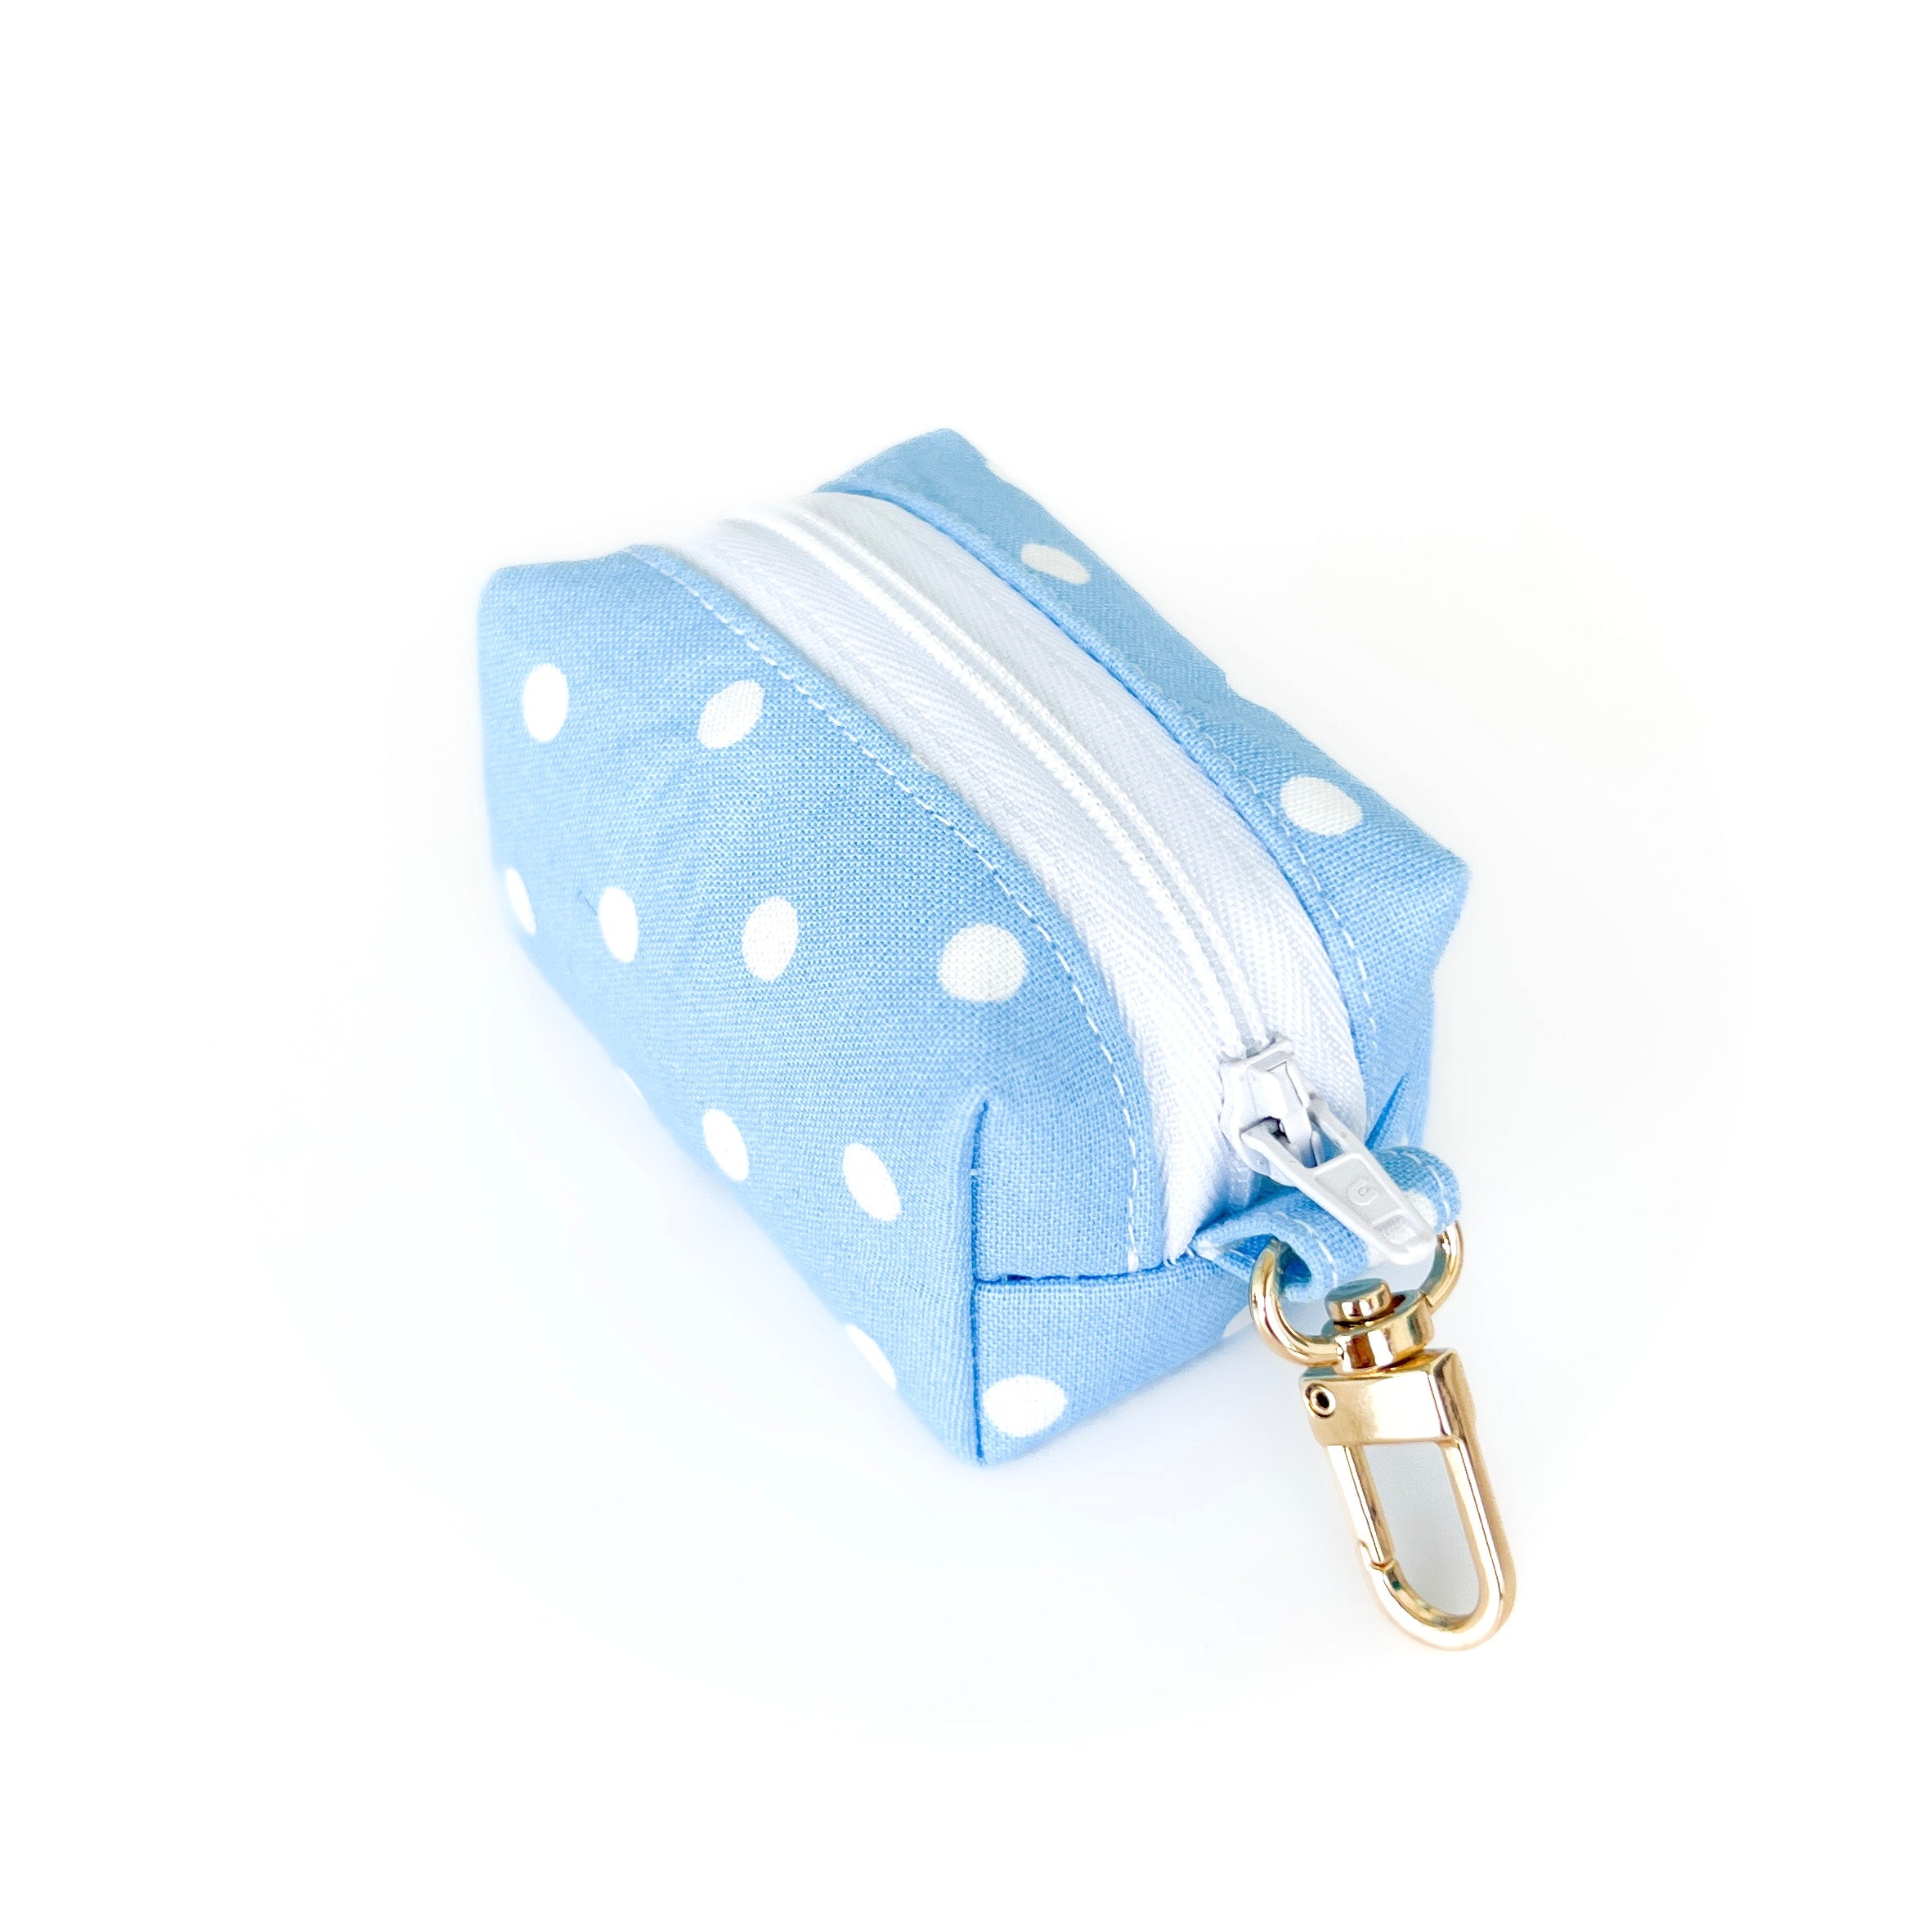 Spring Blue Polka Dot Waste Bag Holder